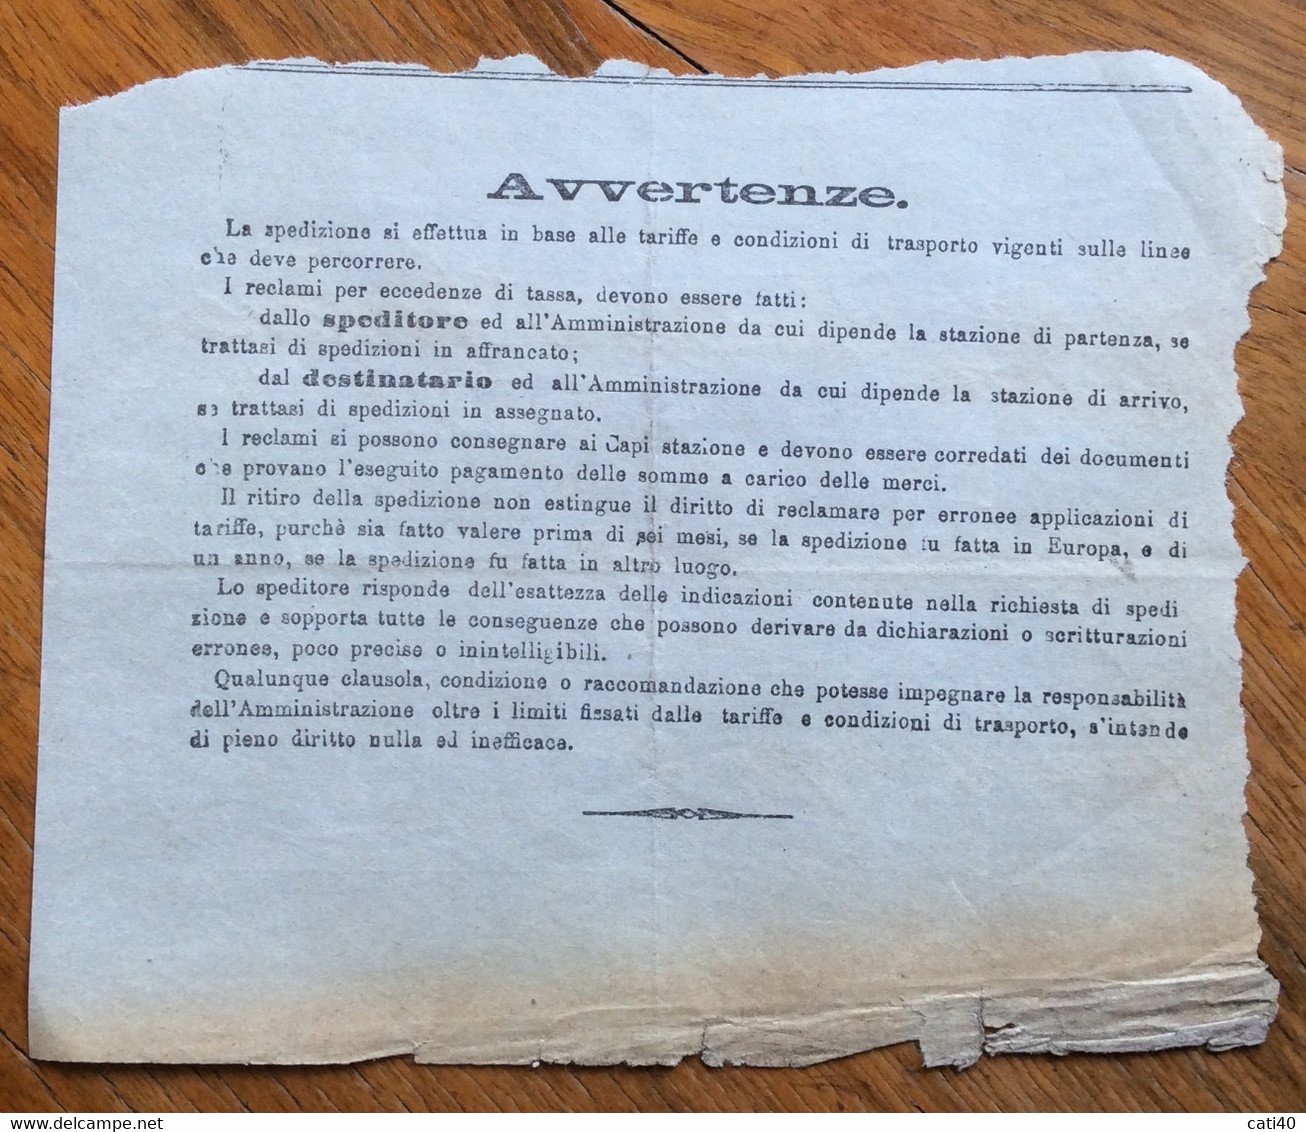 STRADE FERRATE DEL MEDITERRANEO - RICEVUTA SPEDIZIONE DA TORINO A GARLASCO IN DATA 11 GIUGNO 1904 - Europa